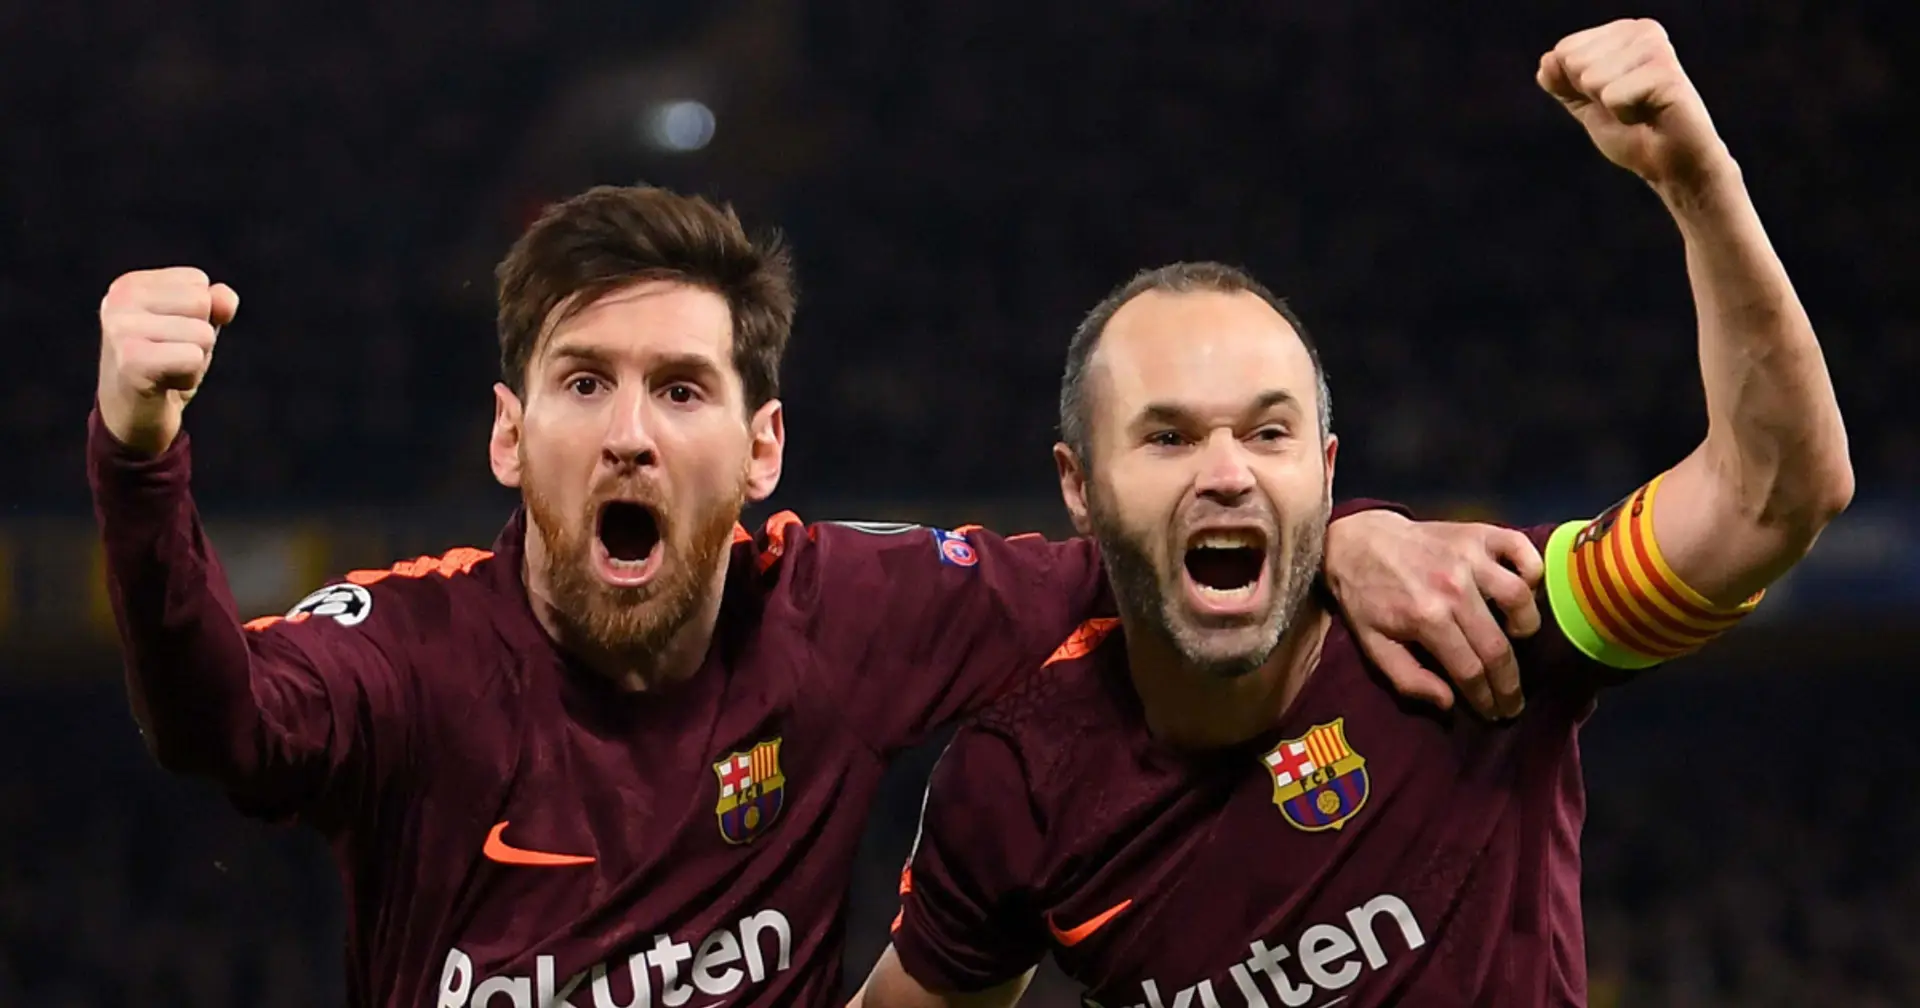 Iniesta über Messi: "Wenn ein Freund und Kollege gut drauf ist, macht mich das glücklich"